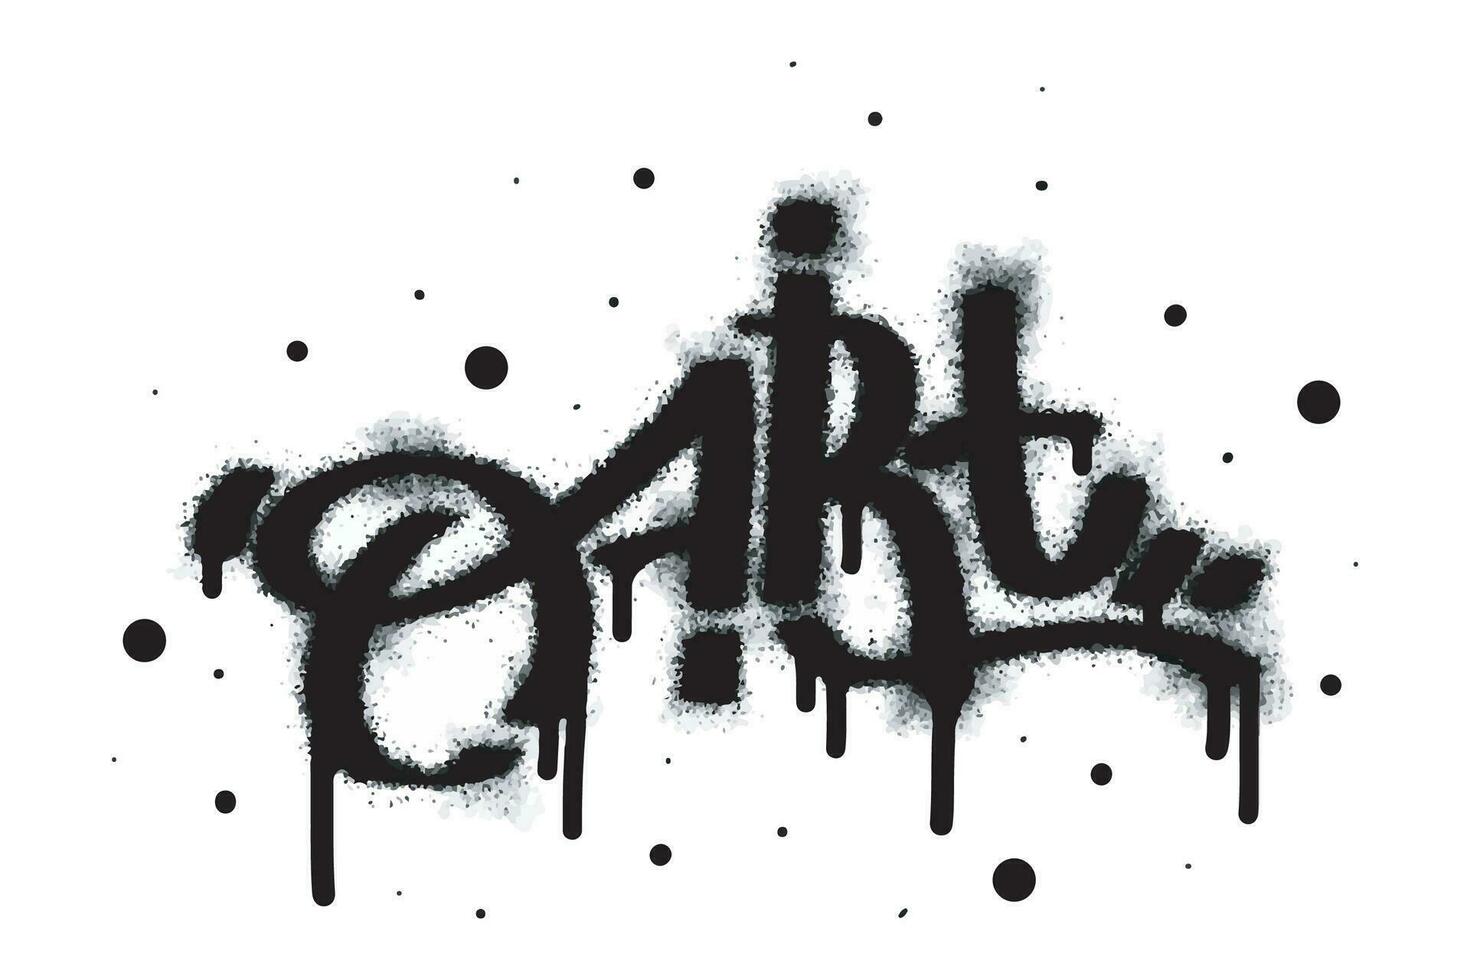 graffiti arte parola e simbolo spruzzato nel nero vettore